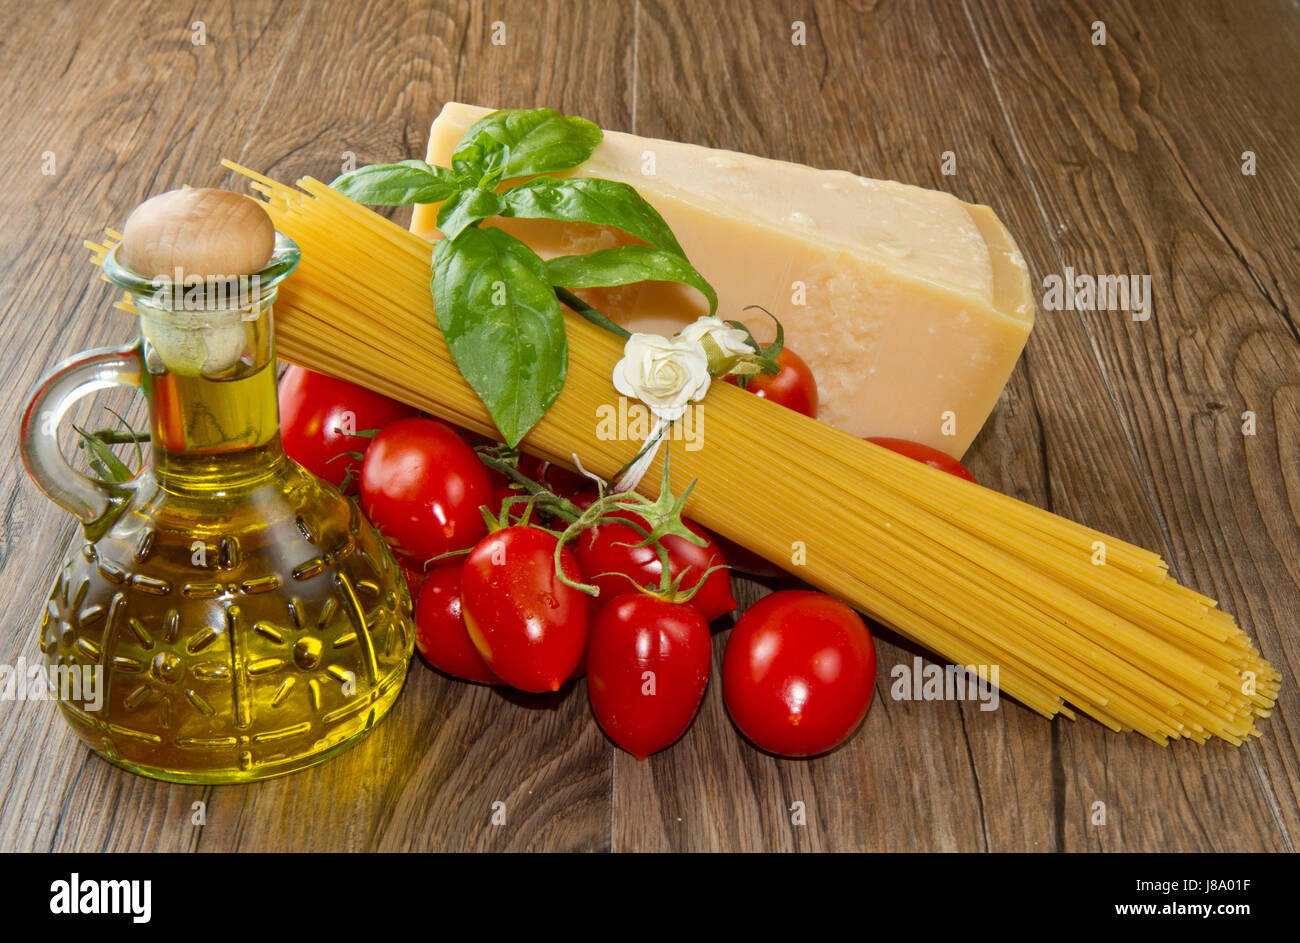 Ristorante, cibo, aliment, legno, cucina, spaghetti, salsa, dieta, Foto Stock